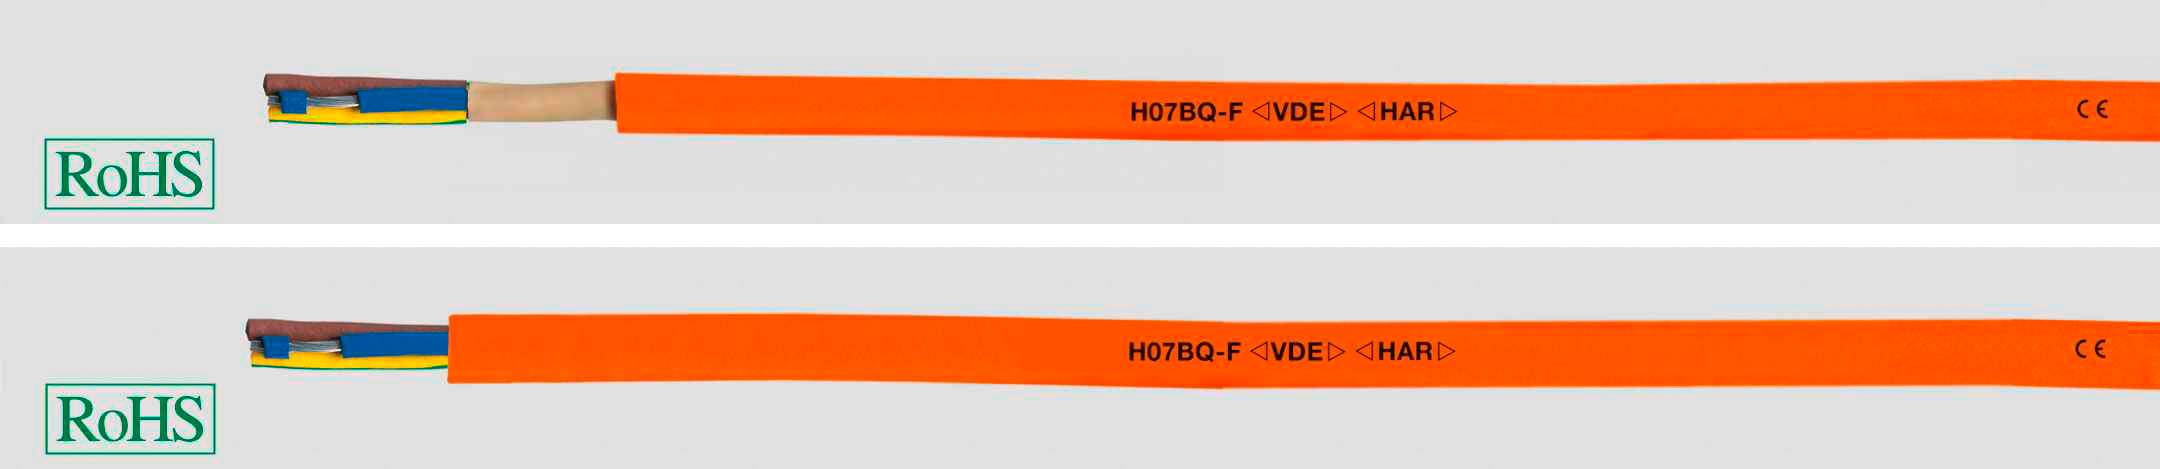 HELUKABEL 22066-1000 Gummischlauchleitung H07BQ-F 4 x 2.5 mm² Orange 1000 m